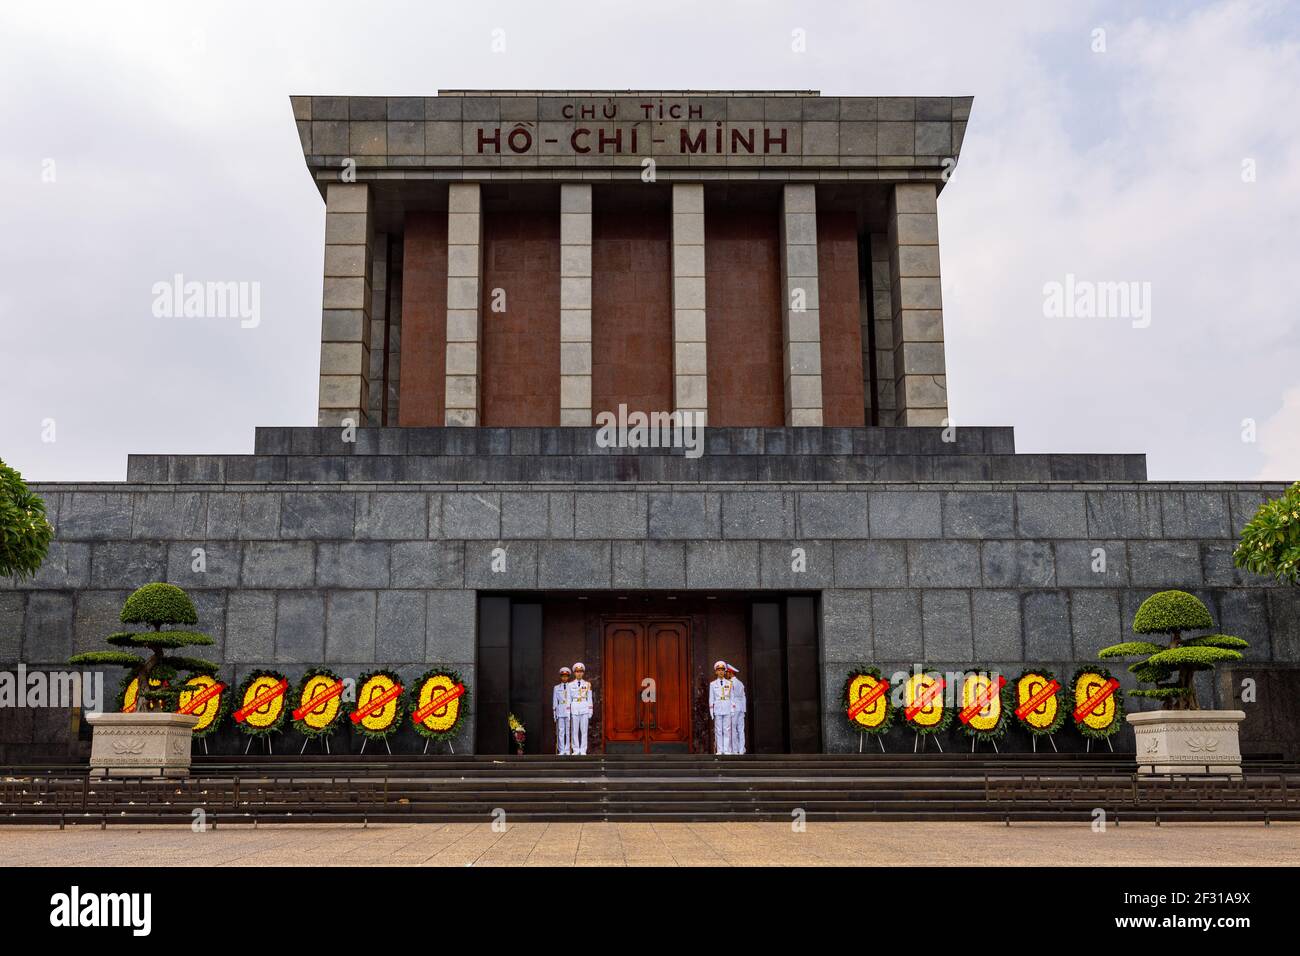 El monumento Ho Chi Minh de Hanoi en Vietnam Foto de stock